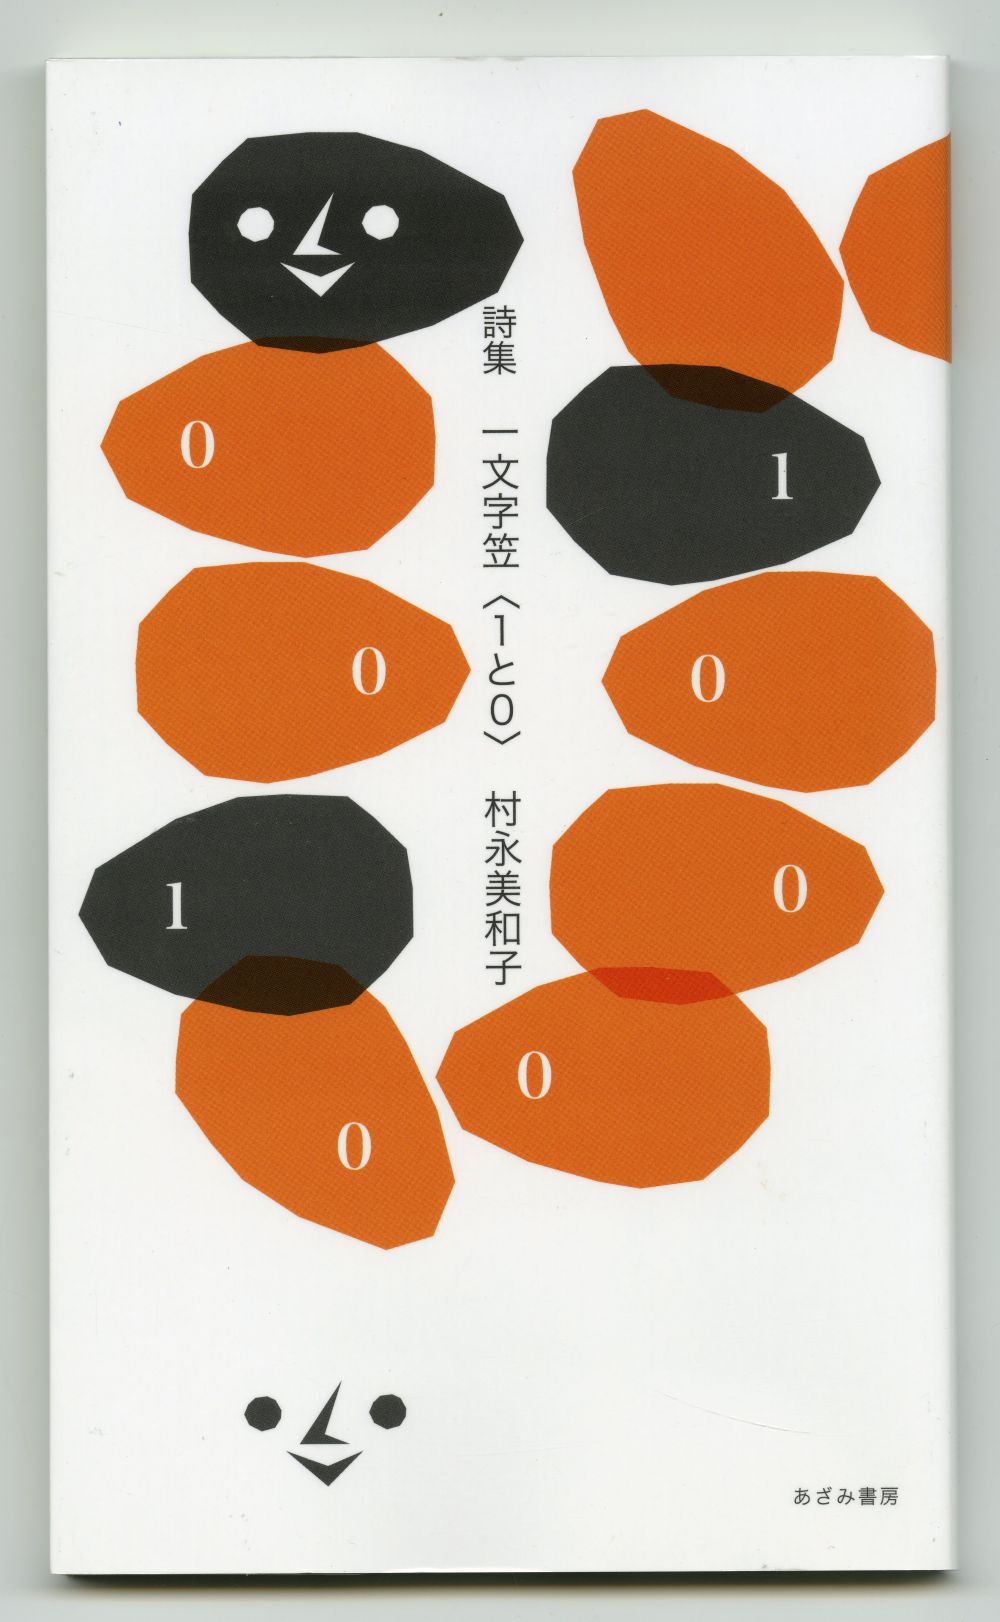 村永美和子の詩集『一文字笠〈１と０〉』01